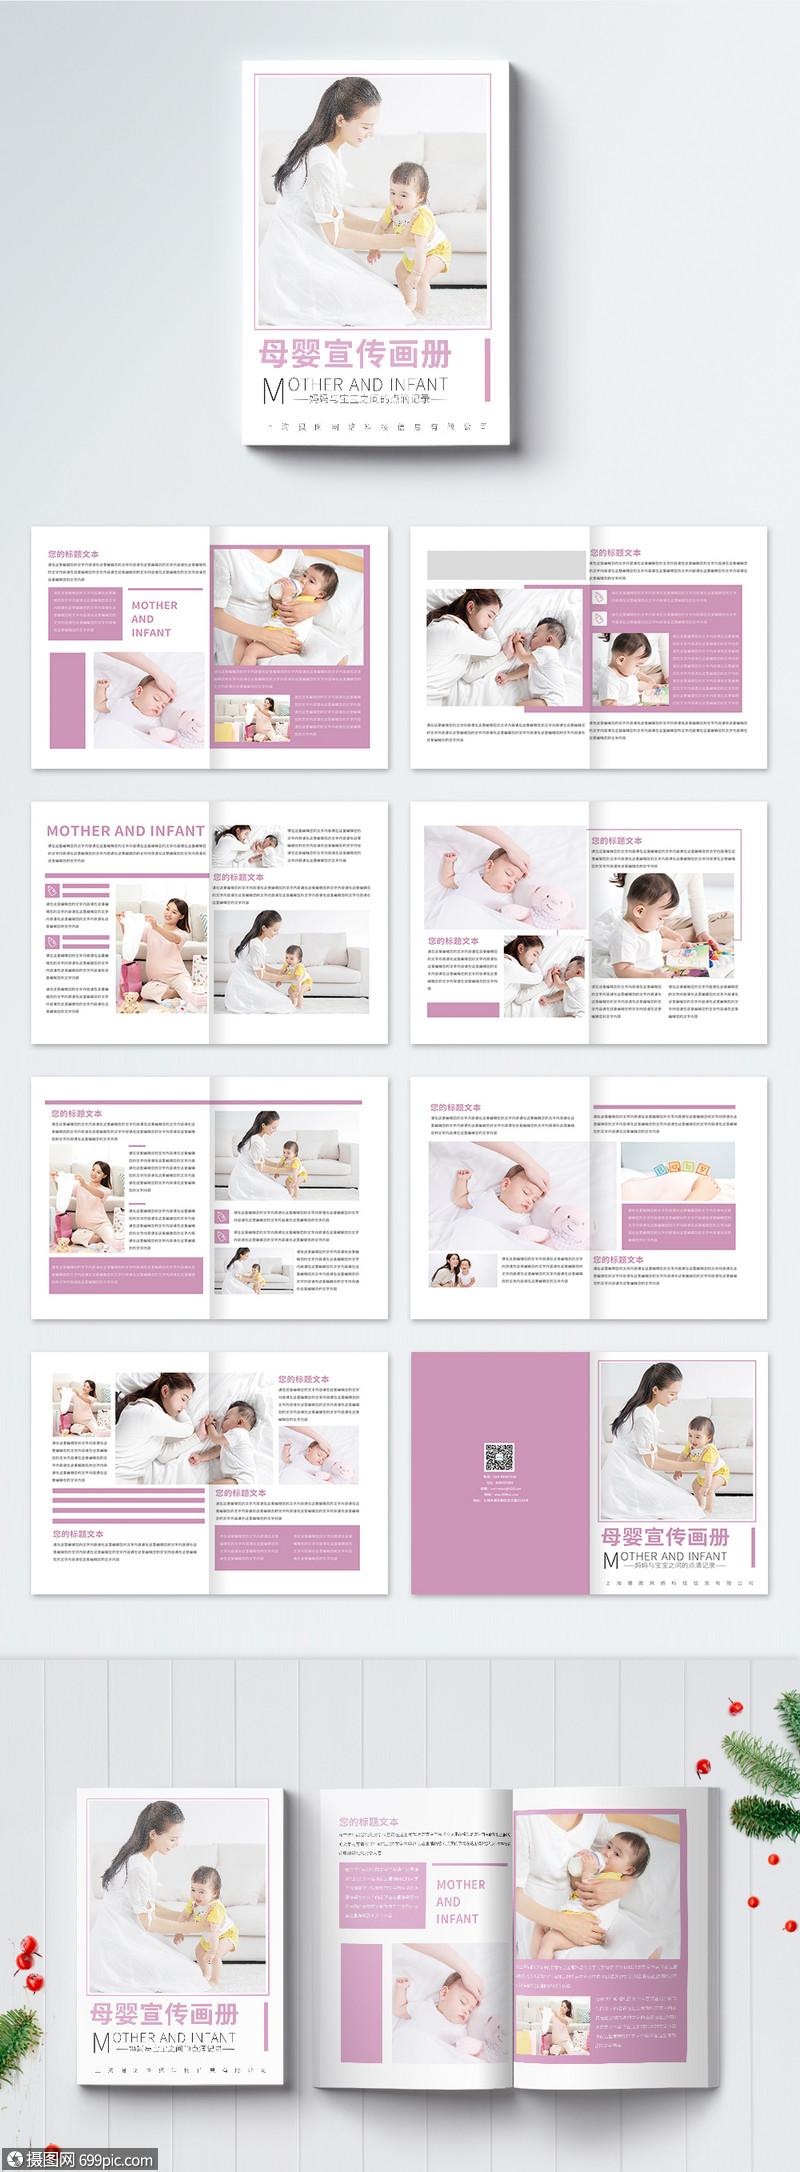 婴儿画册设计的相关图片